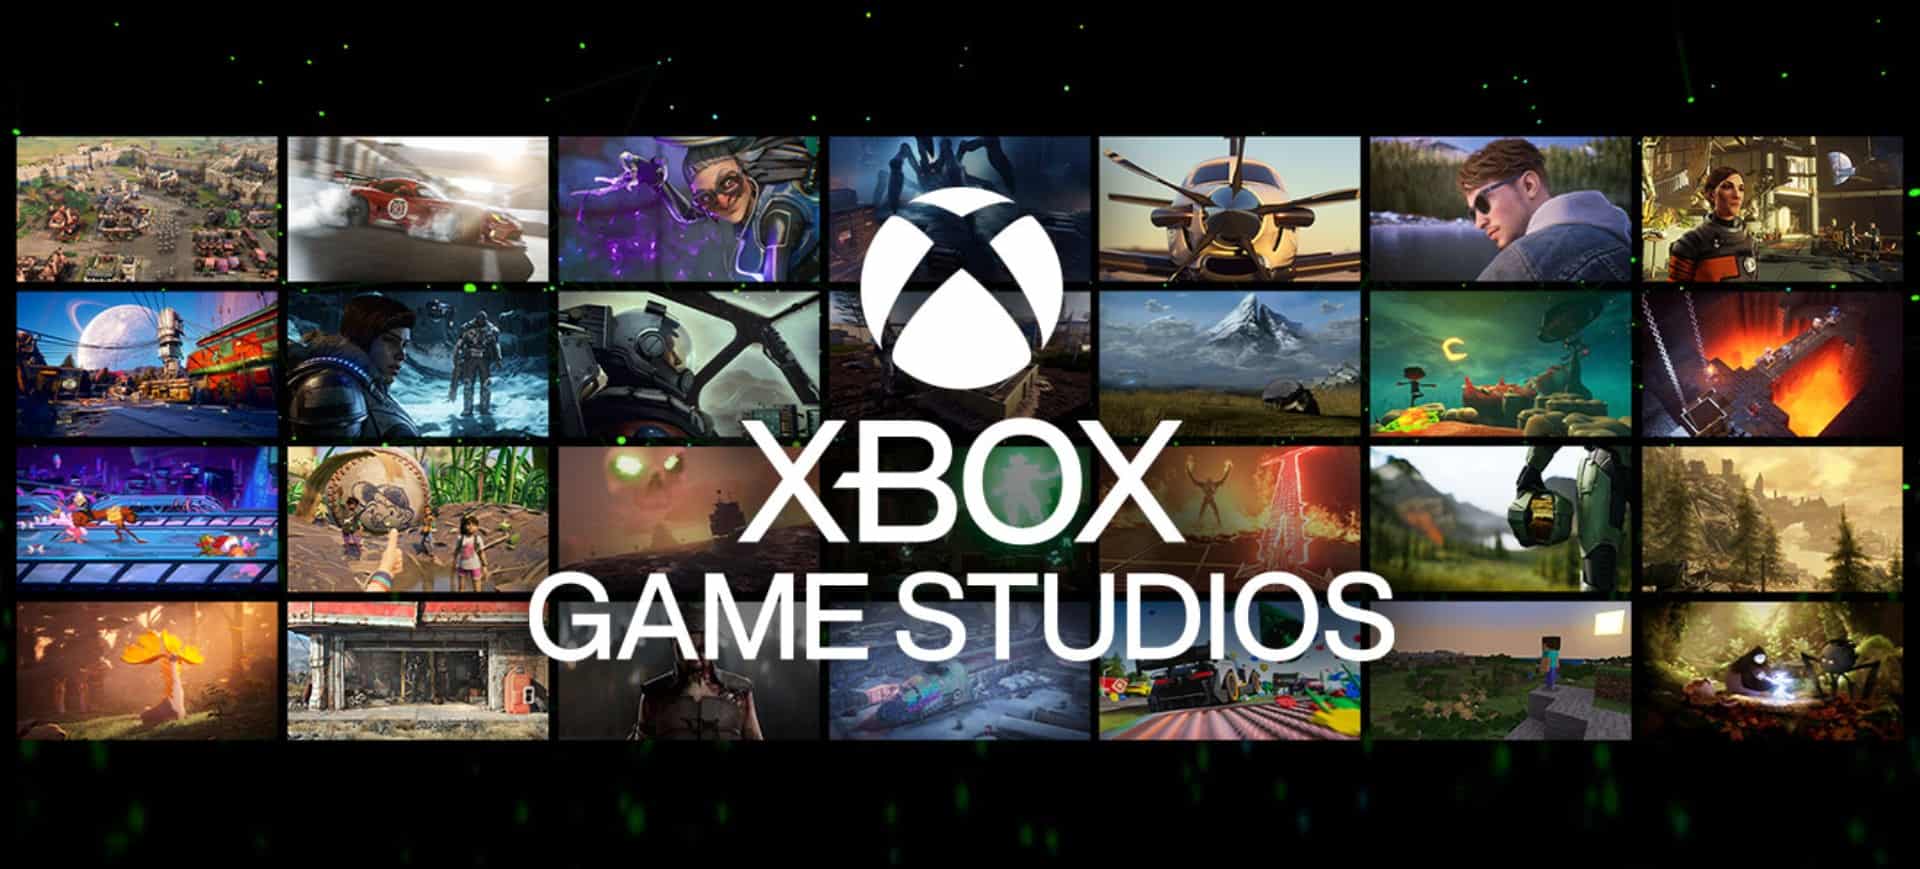 À frente dá para ler o texto Xbox Game Studios, ao lado do logo do Xbox, ao fundo há quadrados alinhados com diferentes cenas de jogos para Xbox